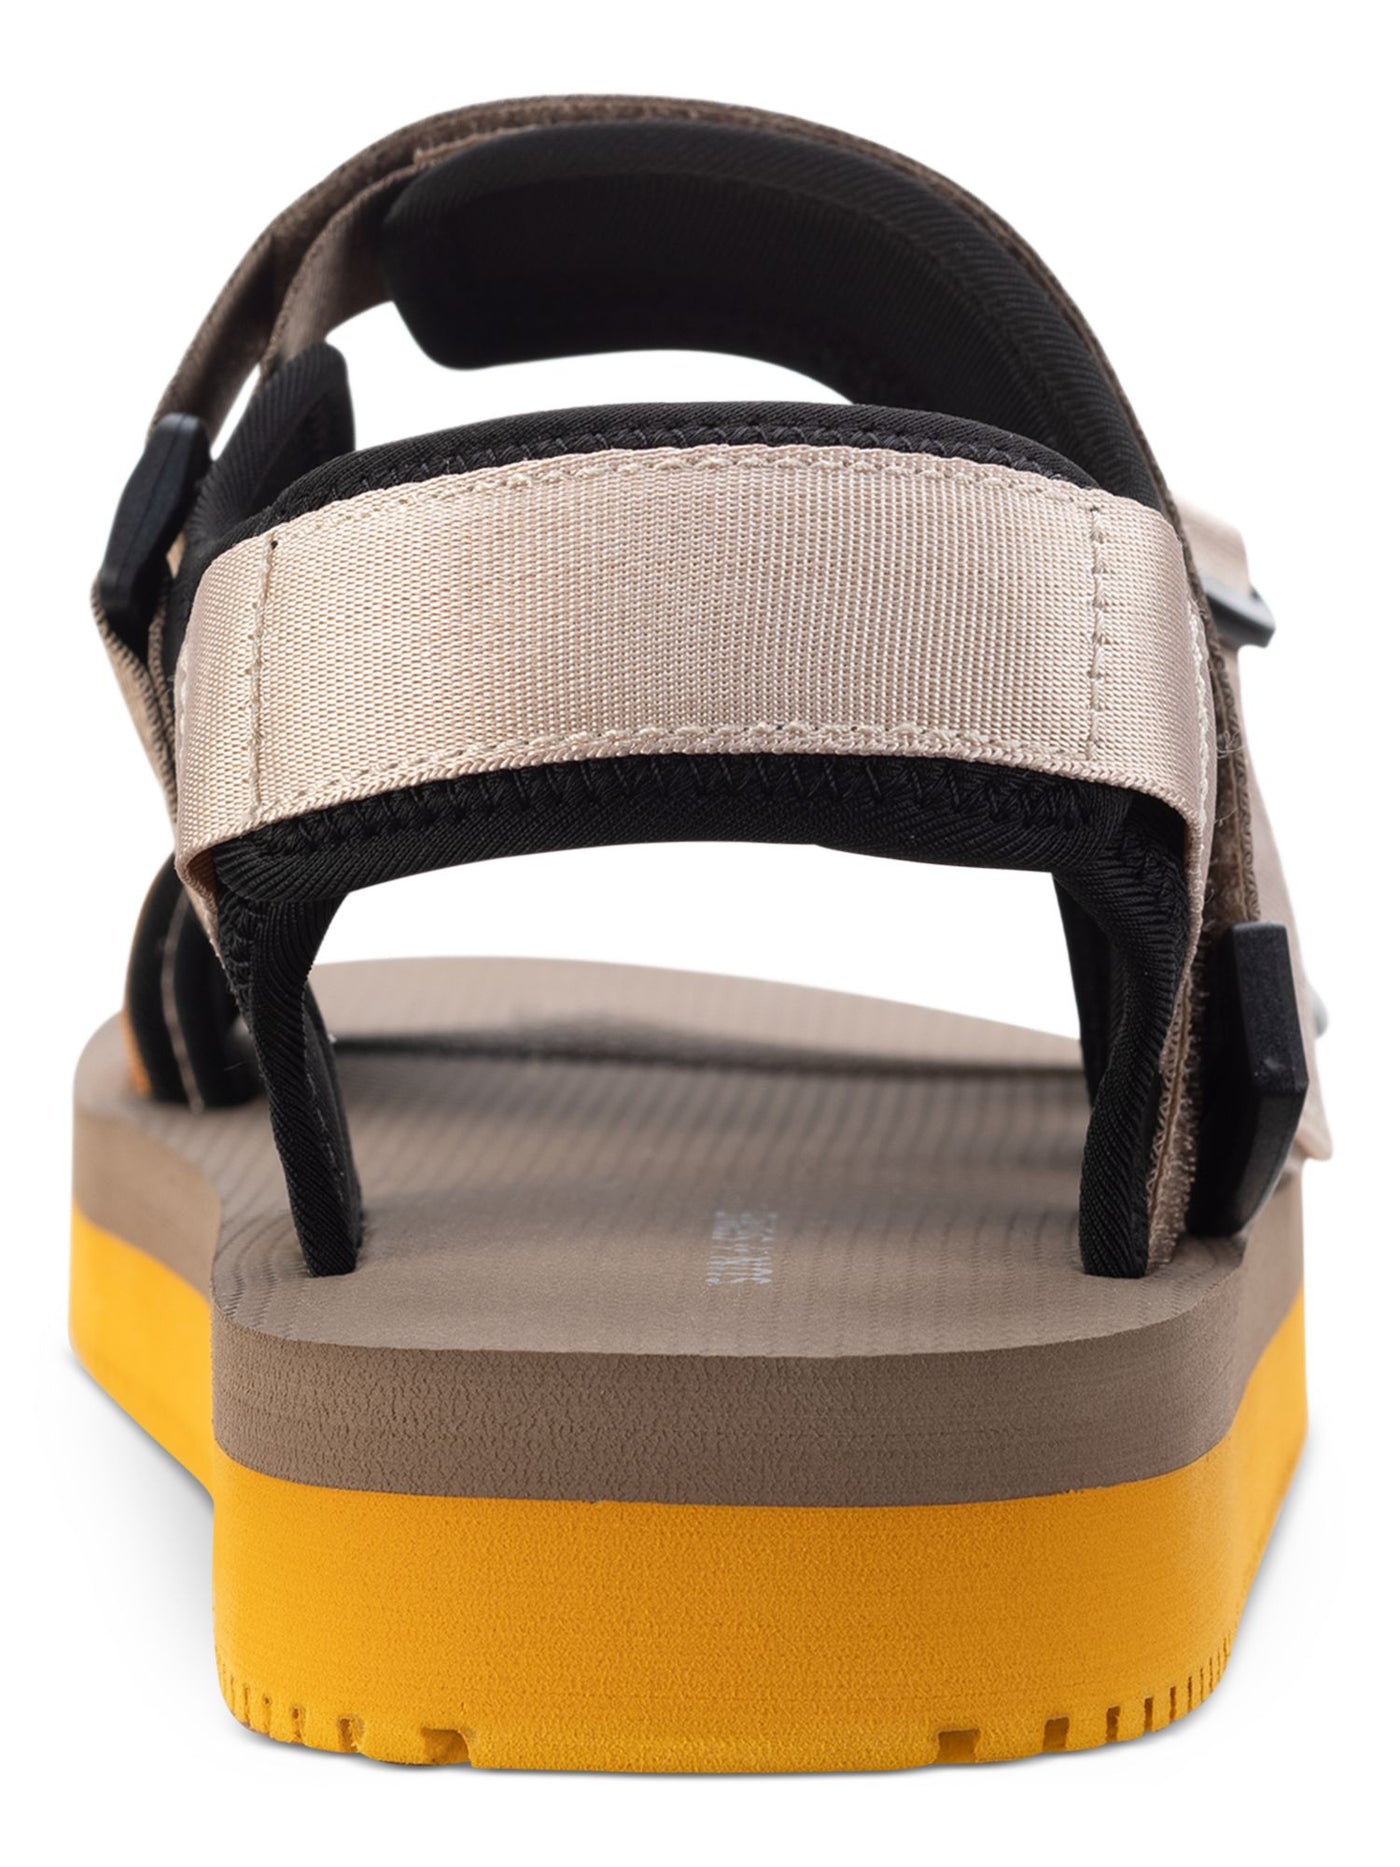 SUN STONE Mens Beige Adjustable Comfort Lormier Round Toe Platform Sandals Shoes 11 M